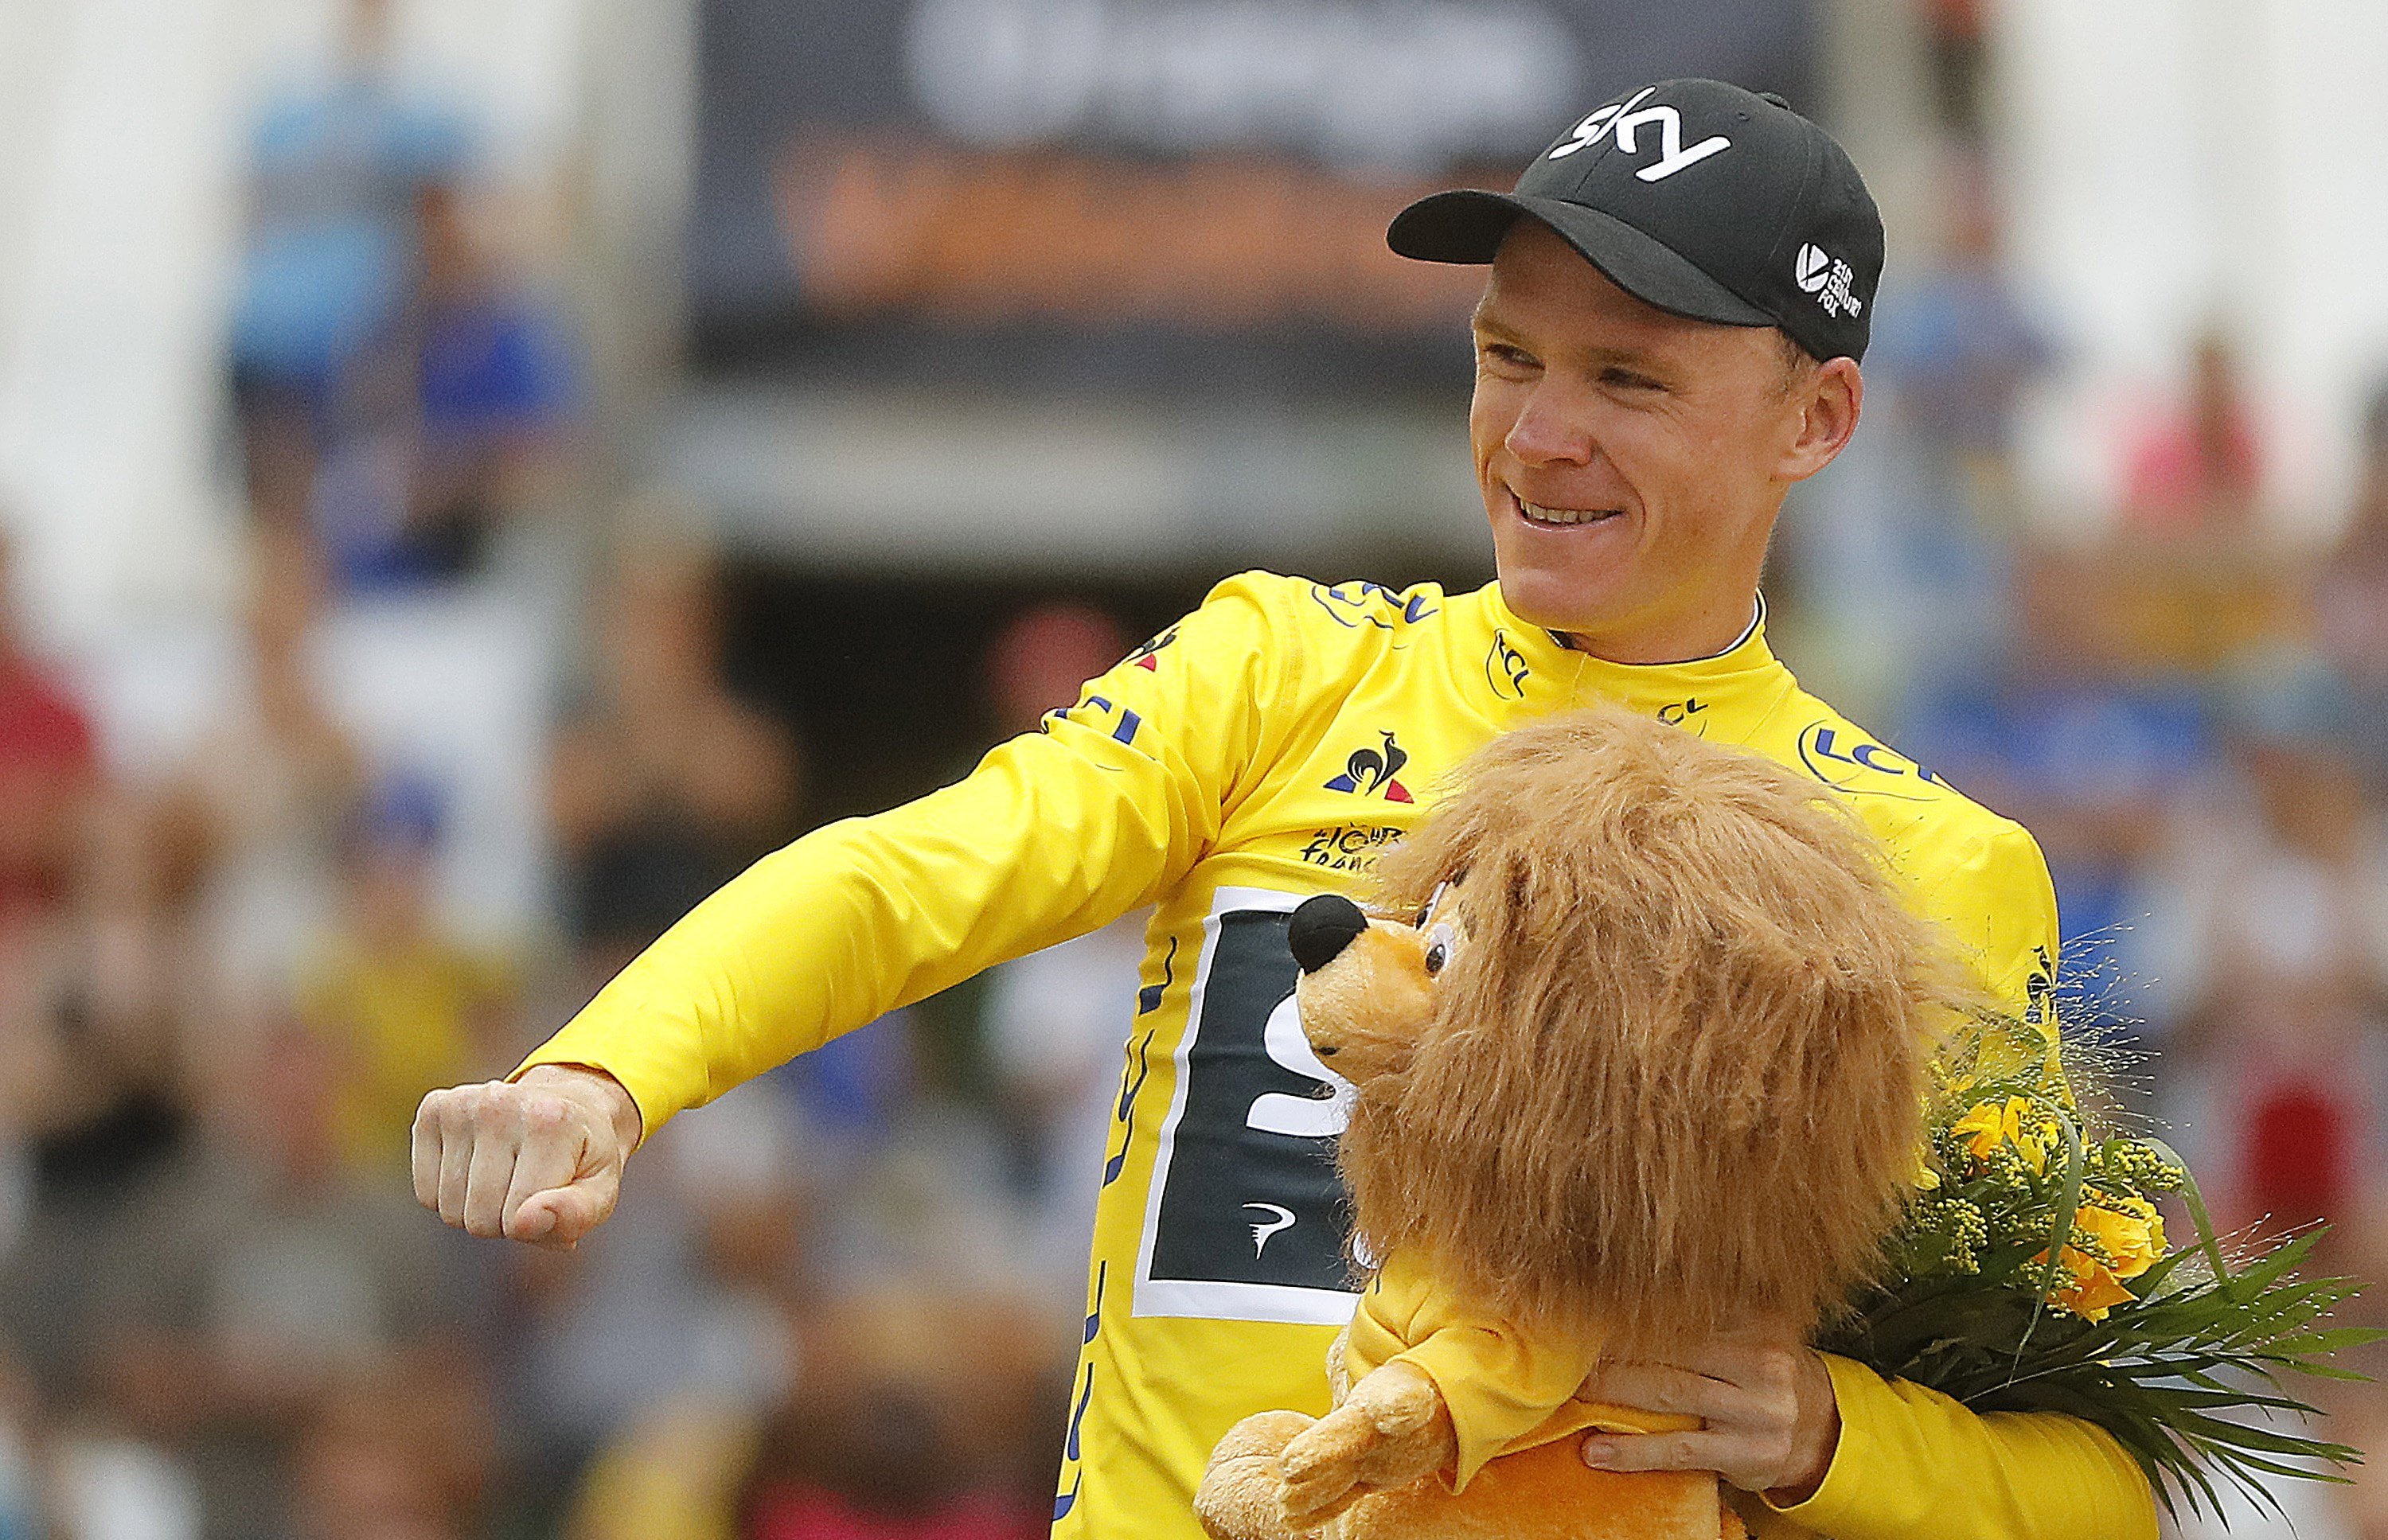 El Tour de França veta la participació de Chris Froome per dopatge